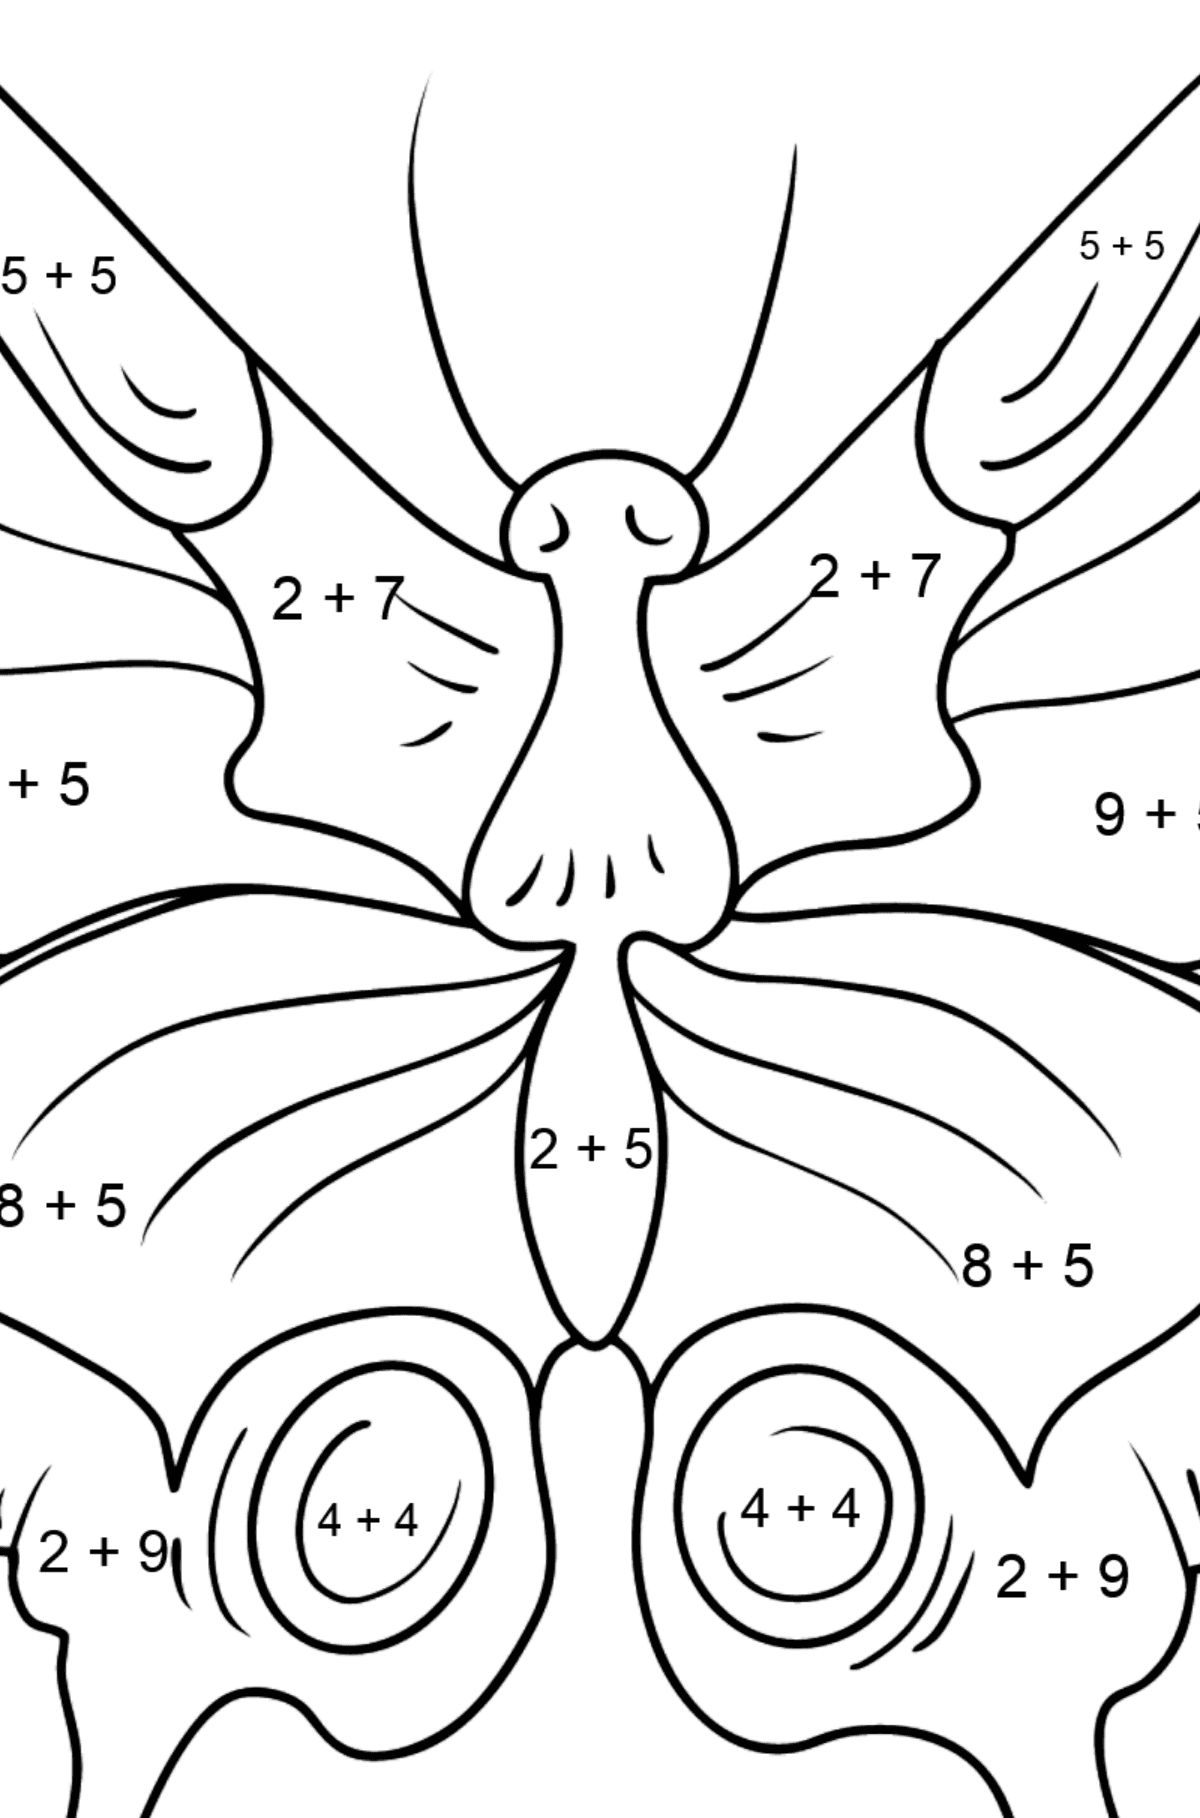 Kolorowanka Motyl paziowaty - Kolorowanki matematyczne dodawanie dla dzieci